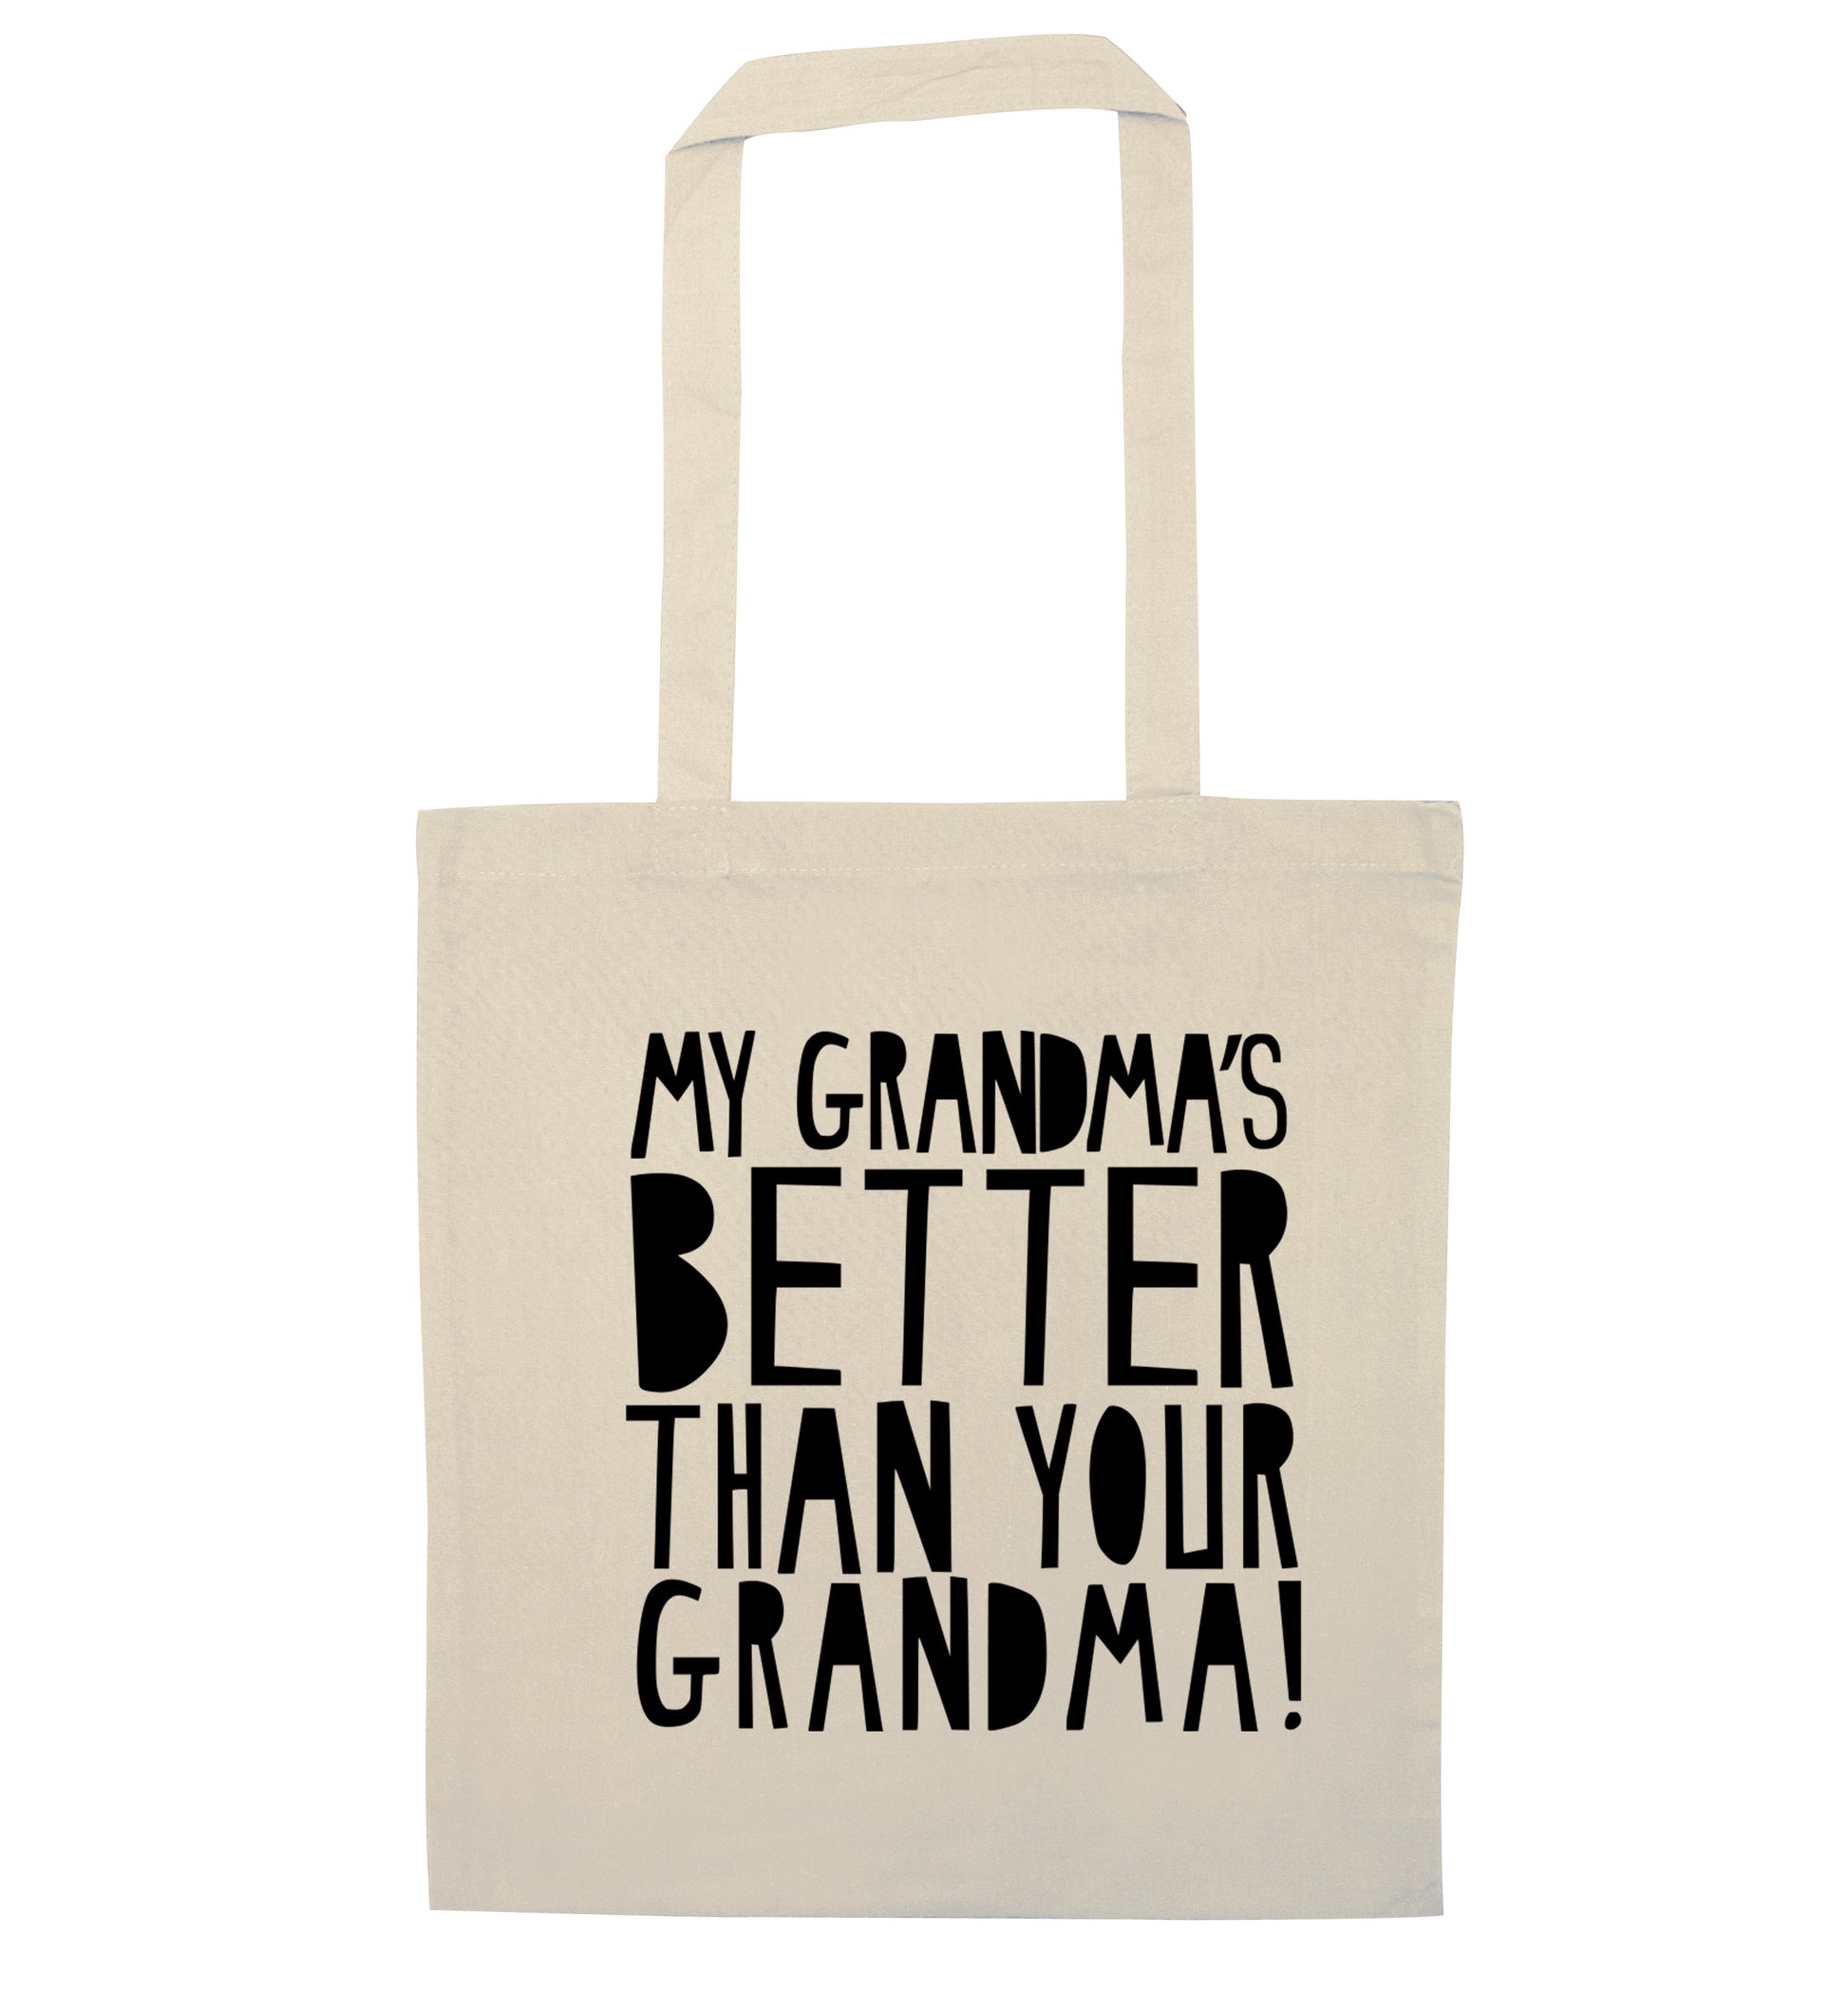 My grandma's better than your grandma natural tote bag